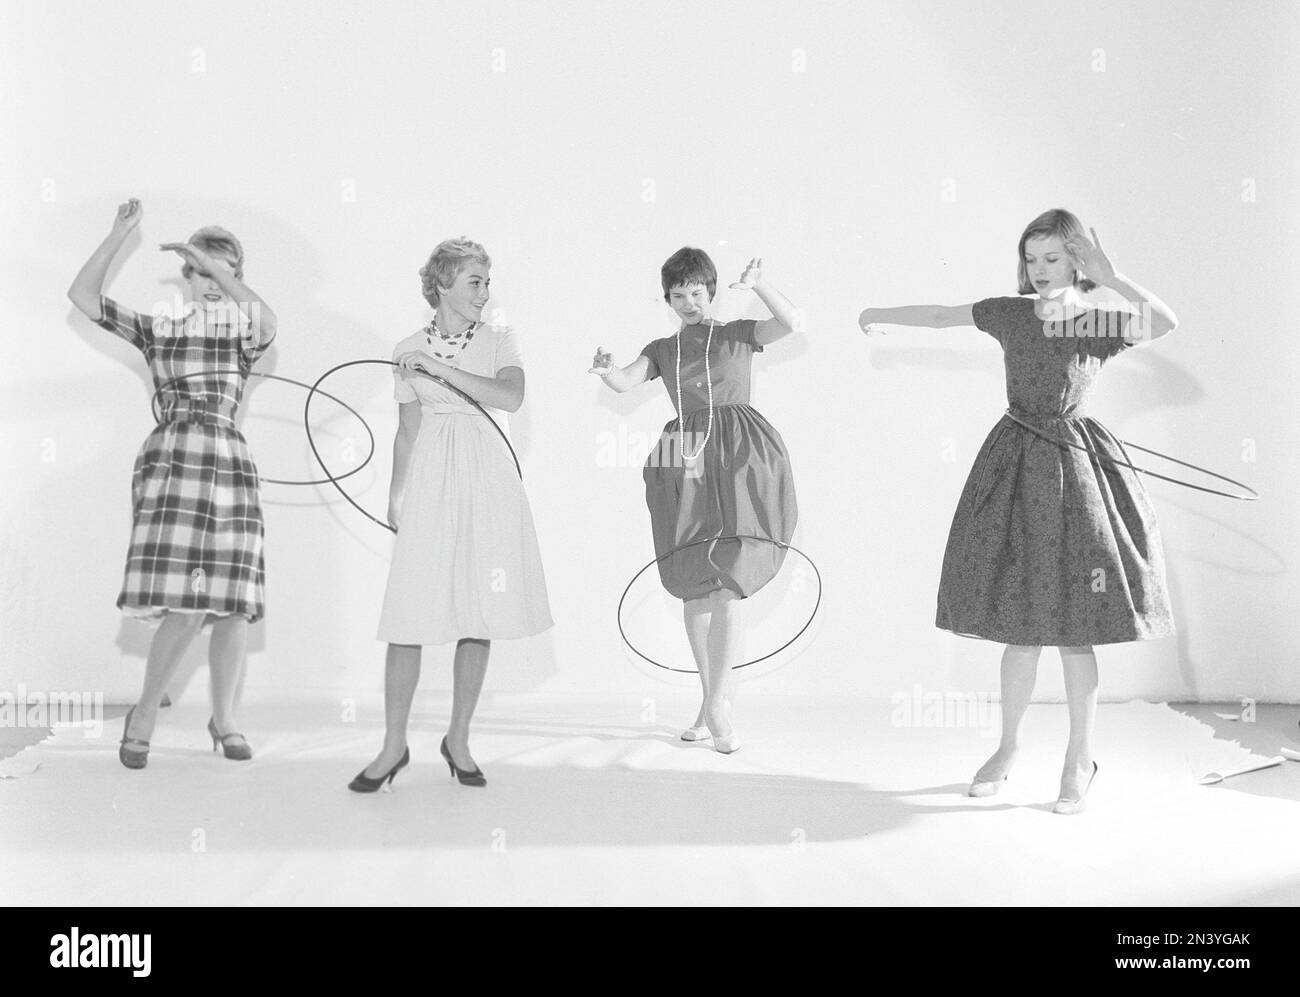 Negli anni '1950s. Donne Hula Hooping. Una mania che culminò nel 1958 con circa 20 milioni di anelli hula venduti in meno di quattro mesi negli Stati Uniti. Svezia 1958 rif BV18-5 Foto Stock